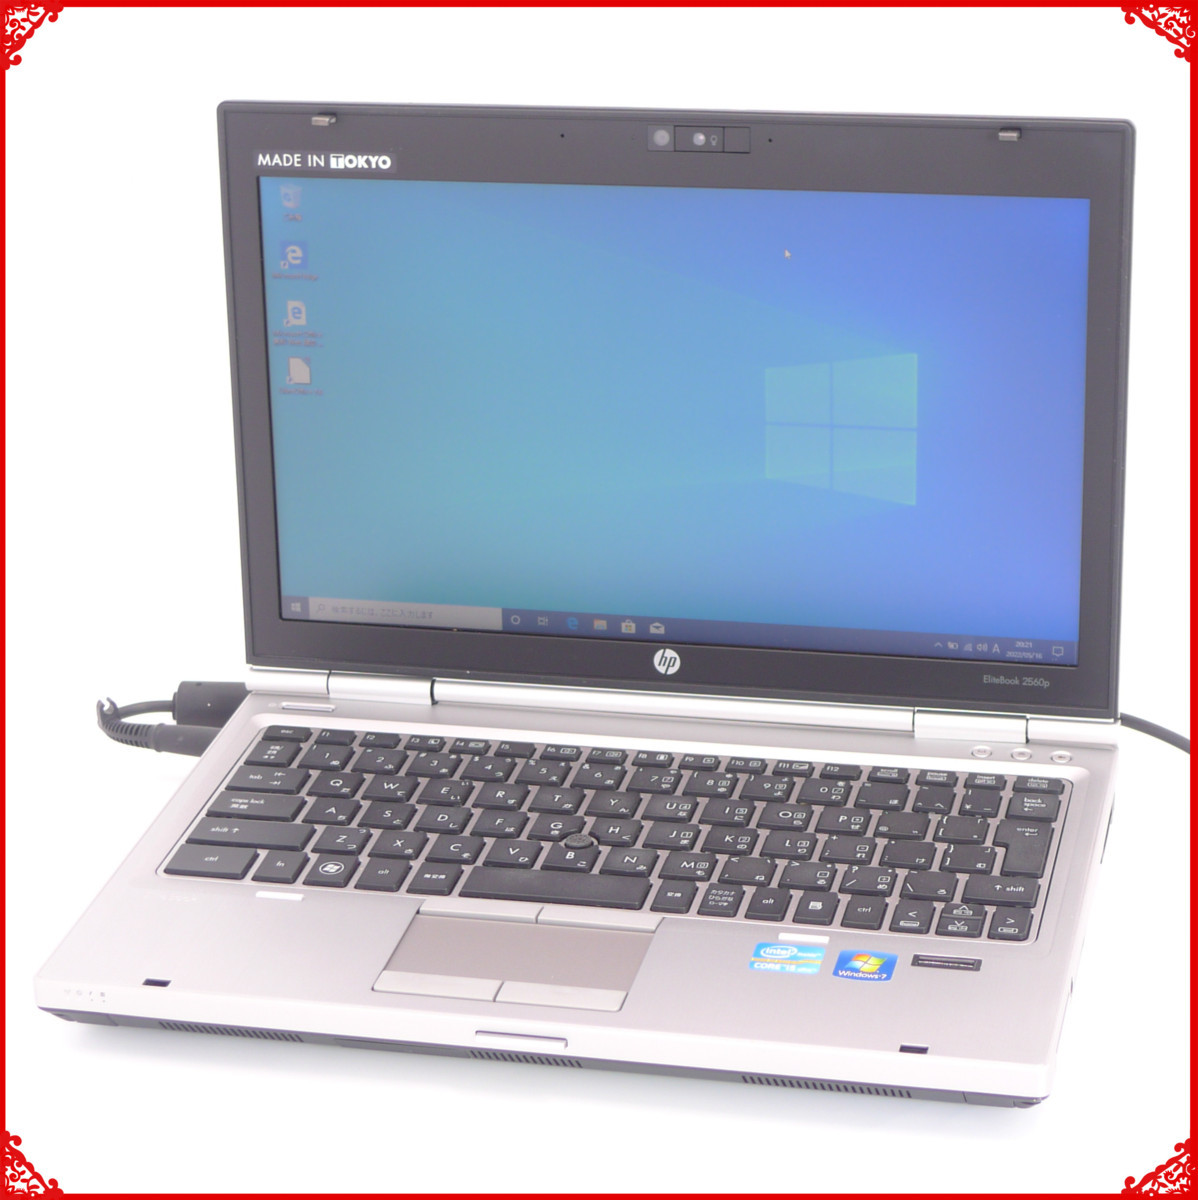 608円 【テレビで話題】 純正新品 HP EliteBook 2560p CT 2570p 日本語キーボード